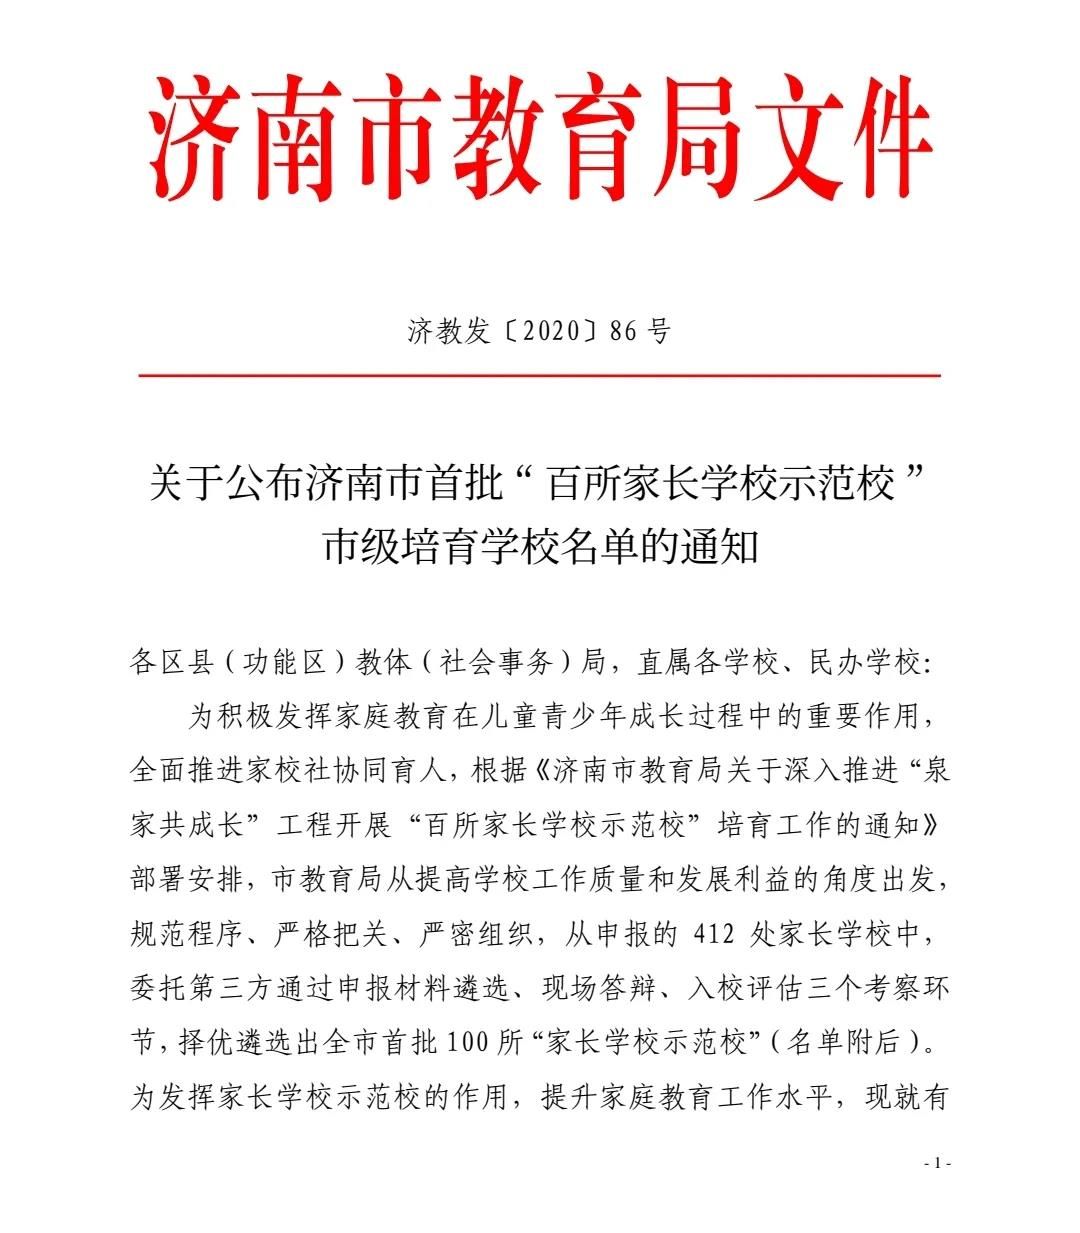 元旦迎喜报，山师齐鲁实验学校被评为济南市首批“新优学校” 和“百所家长学校示范校”